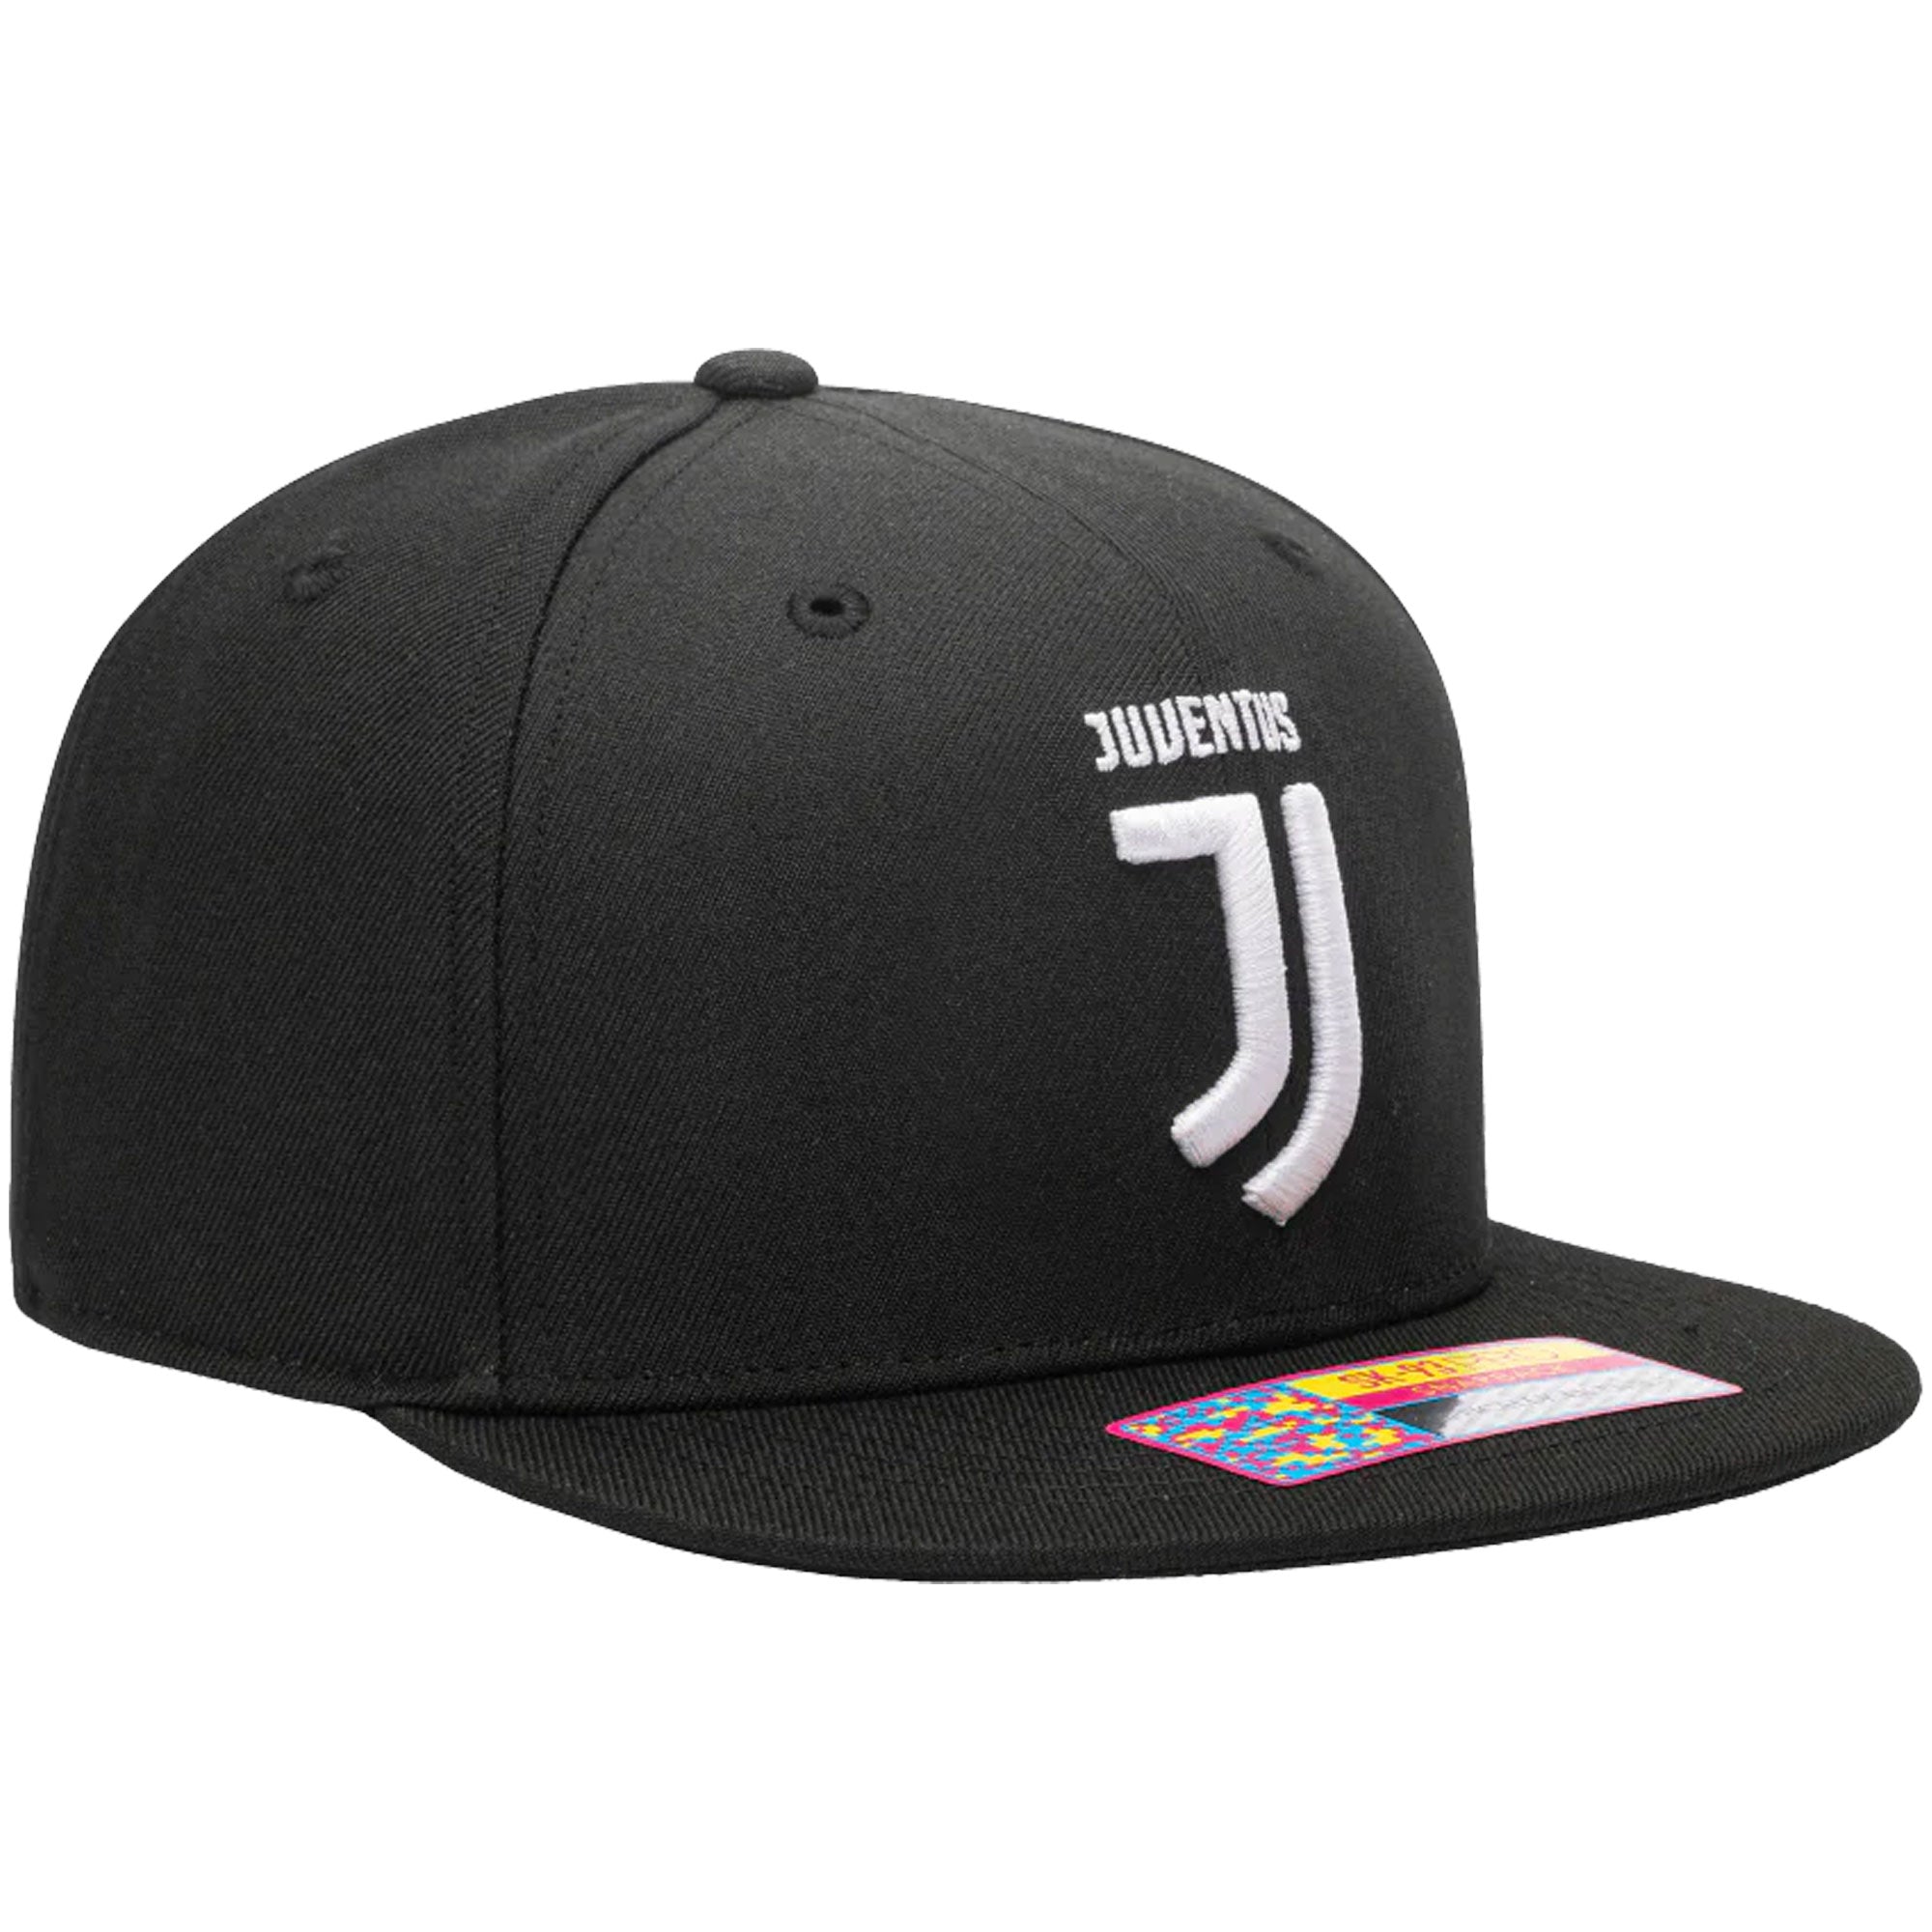 Fan Ink Juventus Snapback Hat Black/White